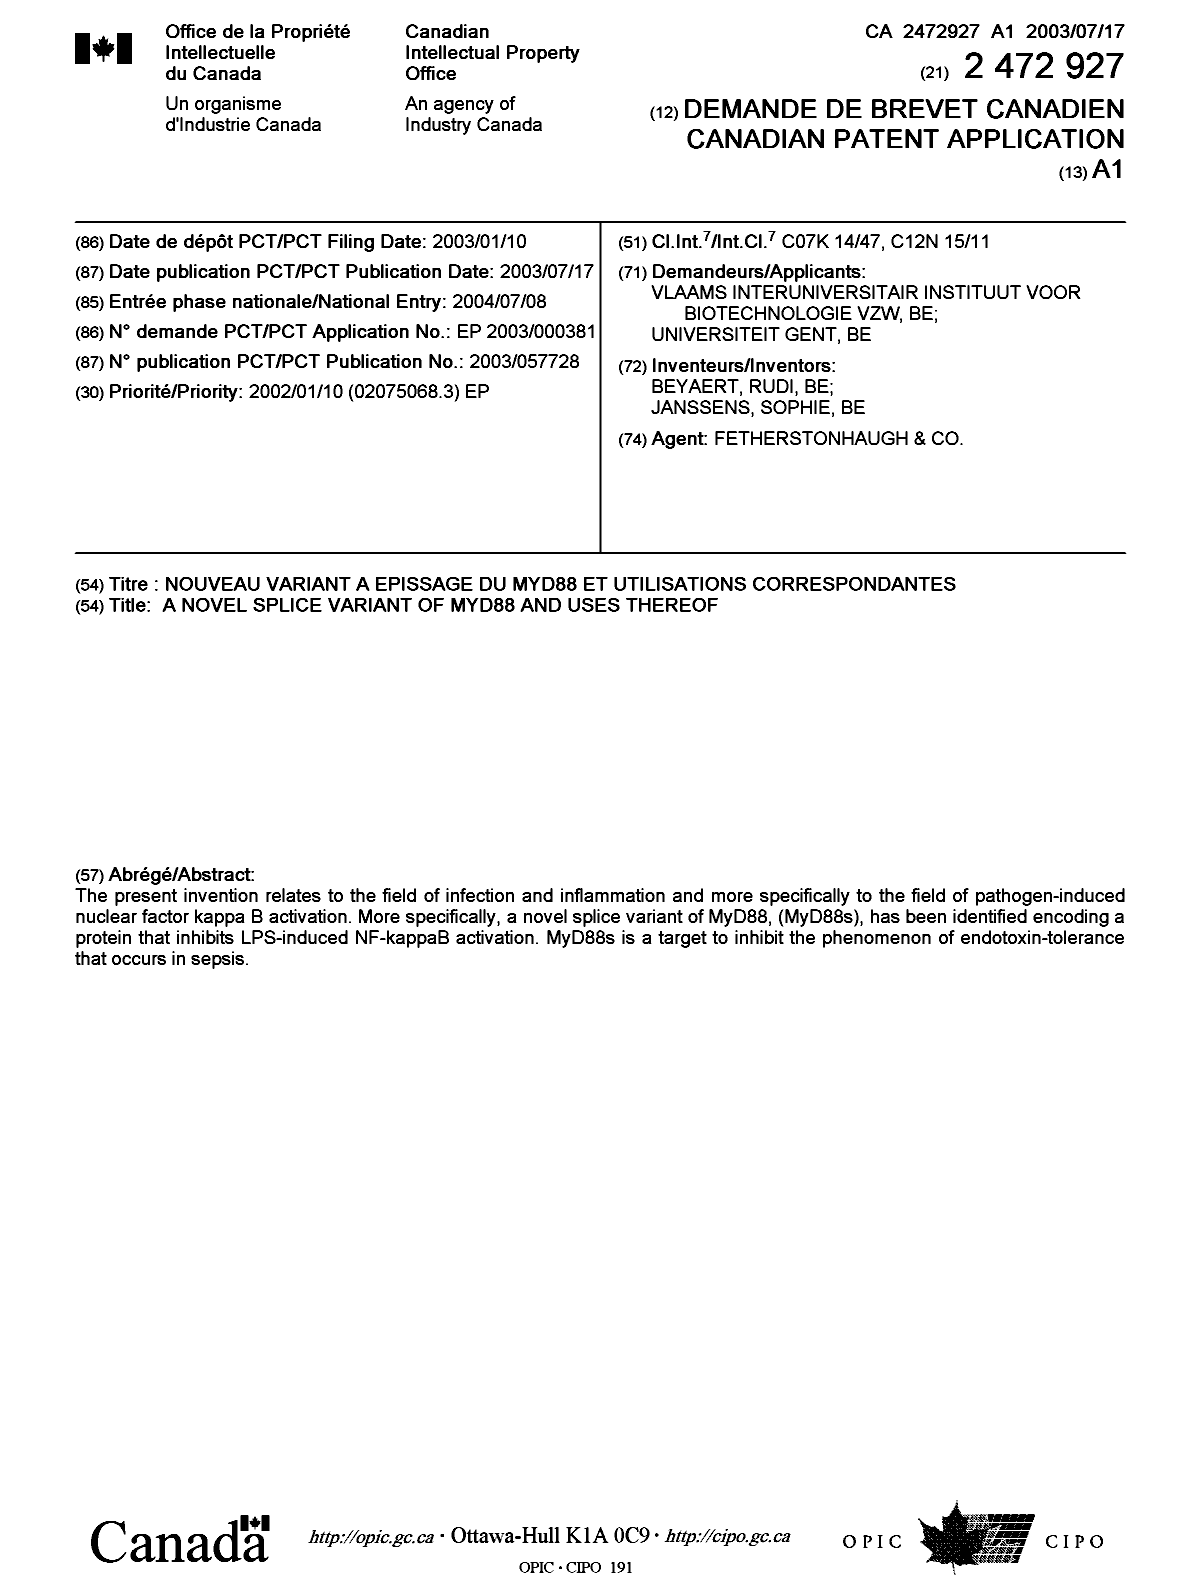 Document de brevet canadien 2472927. Page couverture 20040901. Image 1 de 1